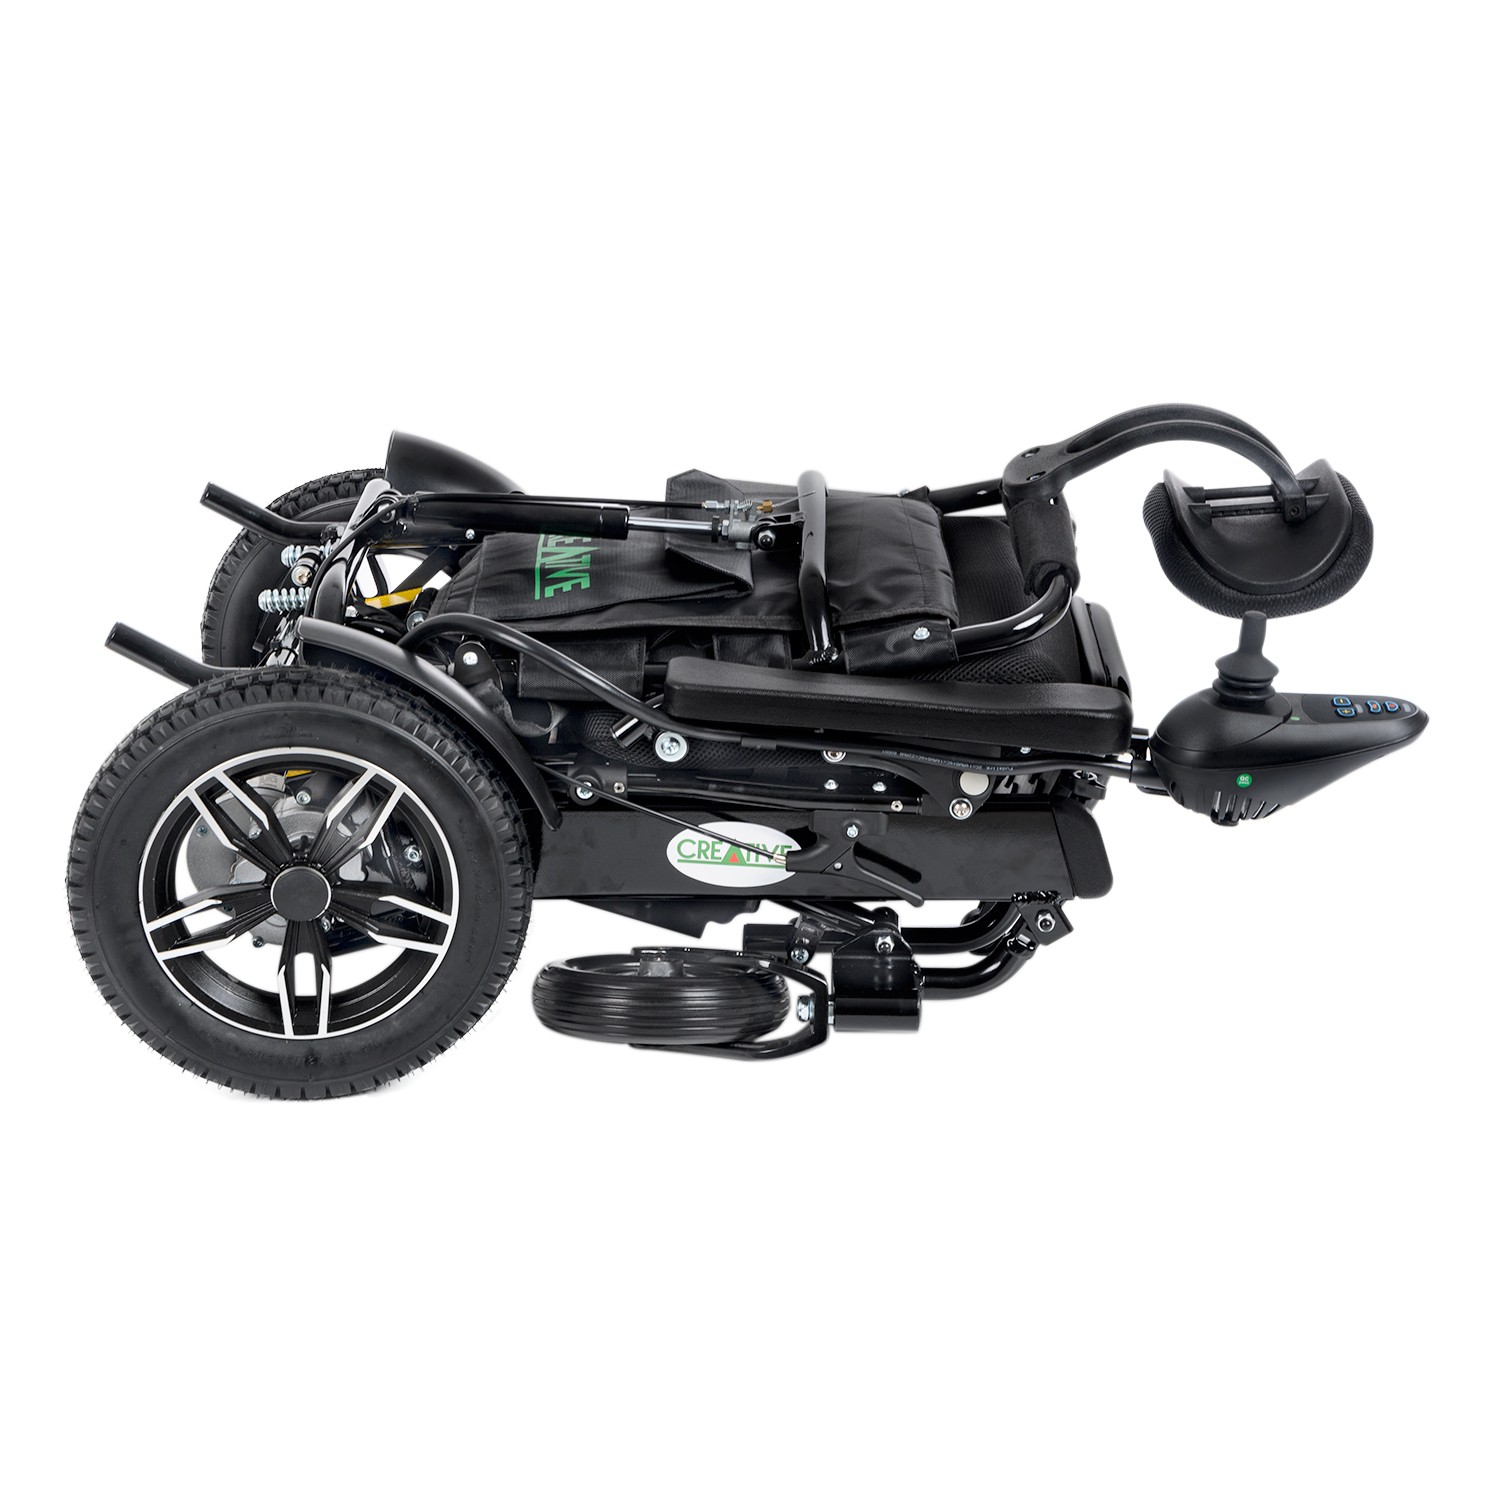 Creative CR-6012 Lux Lityum Pilli Akülü Tekerlekli Sandalye 